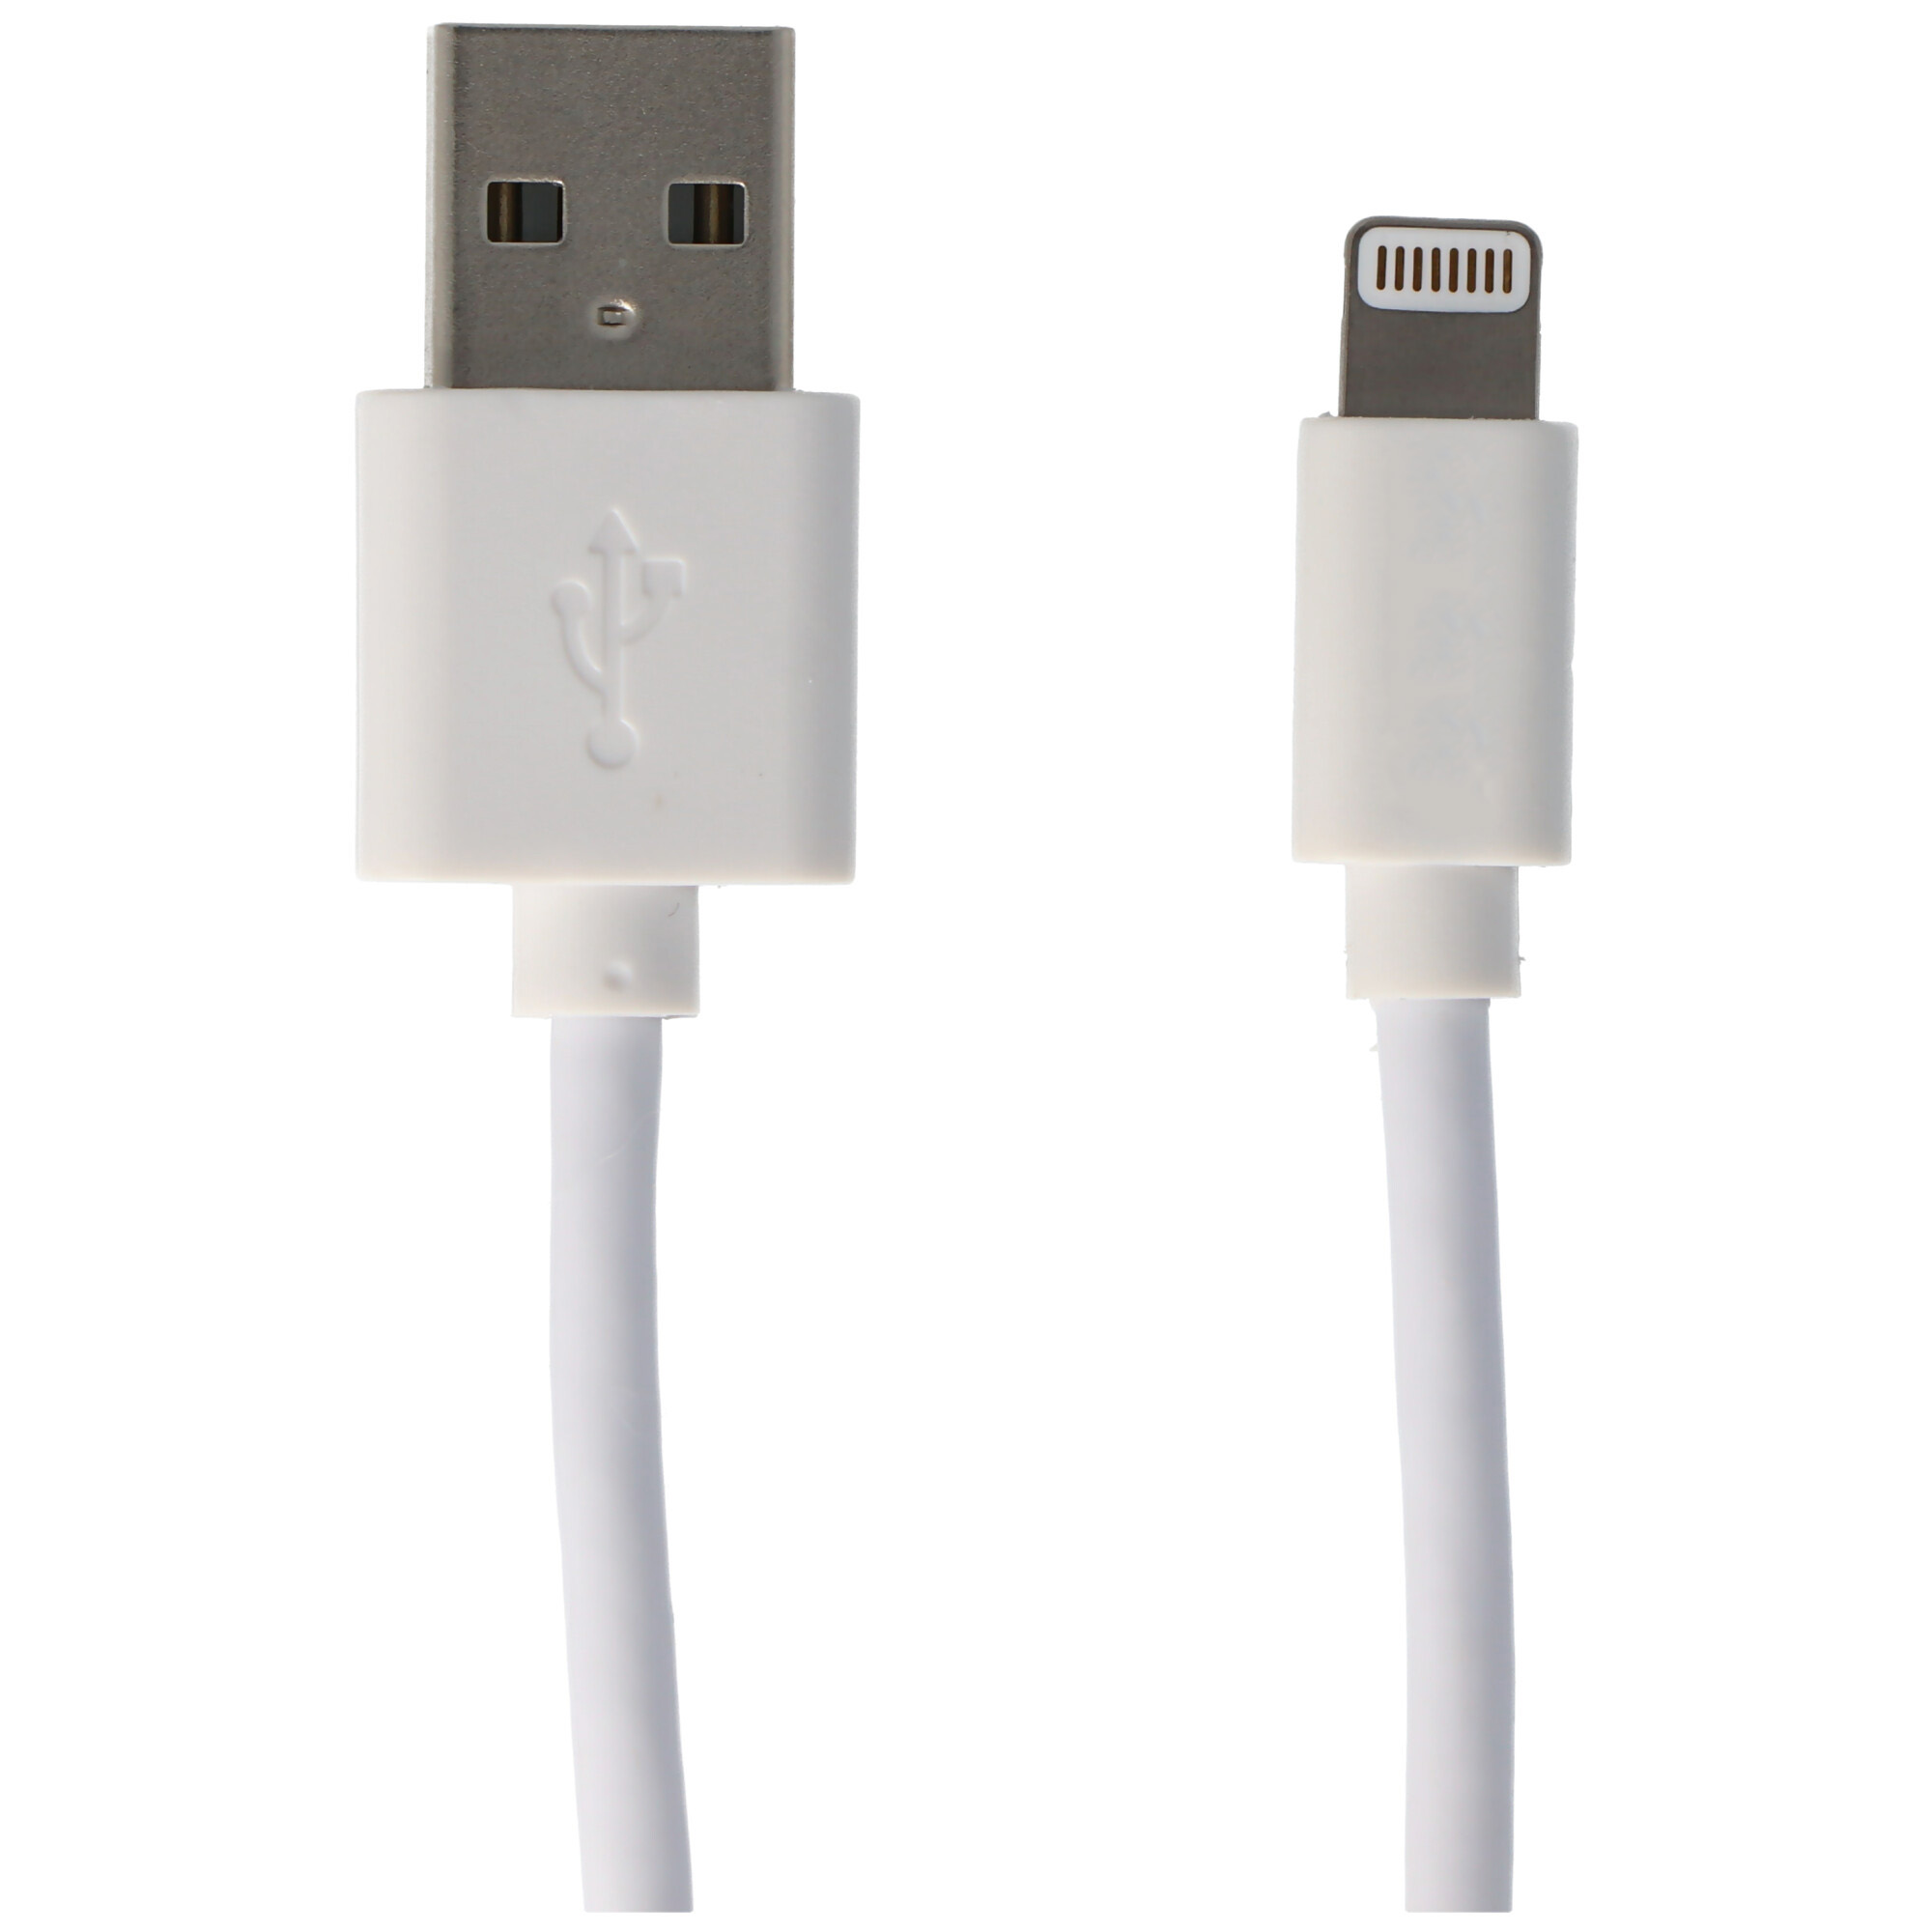 USB Lade- & Synckabel für iPhone, Apple iPod oder iPod mit Lightning Connector, weiß 2 Meter